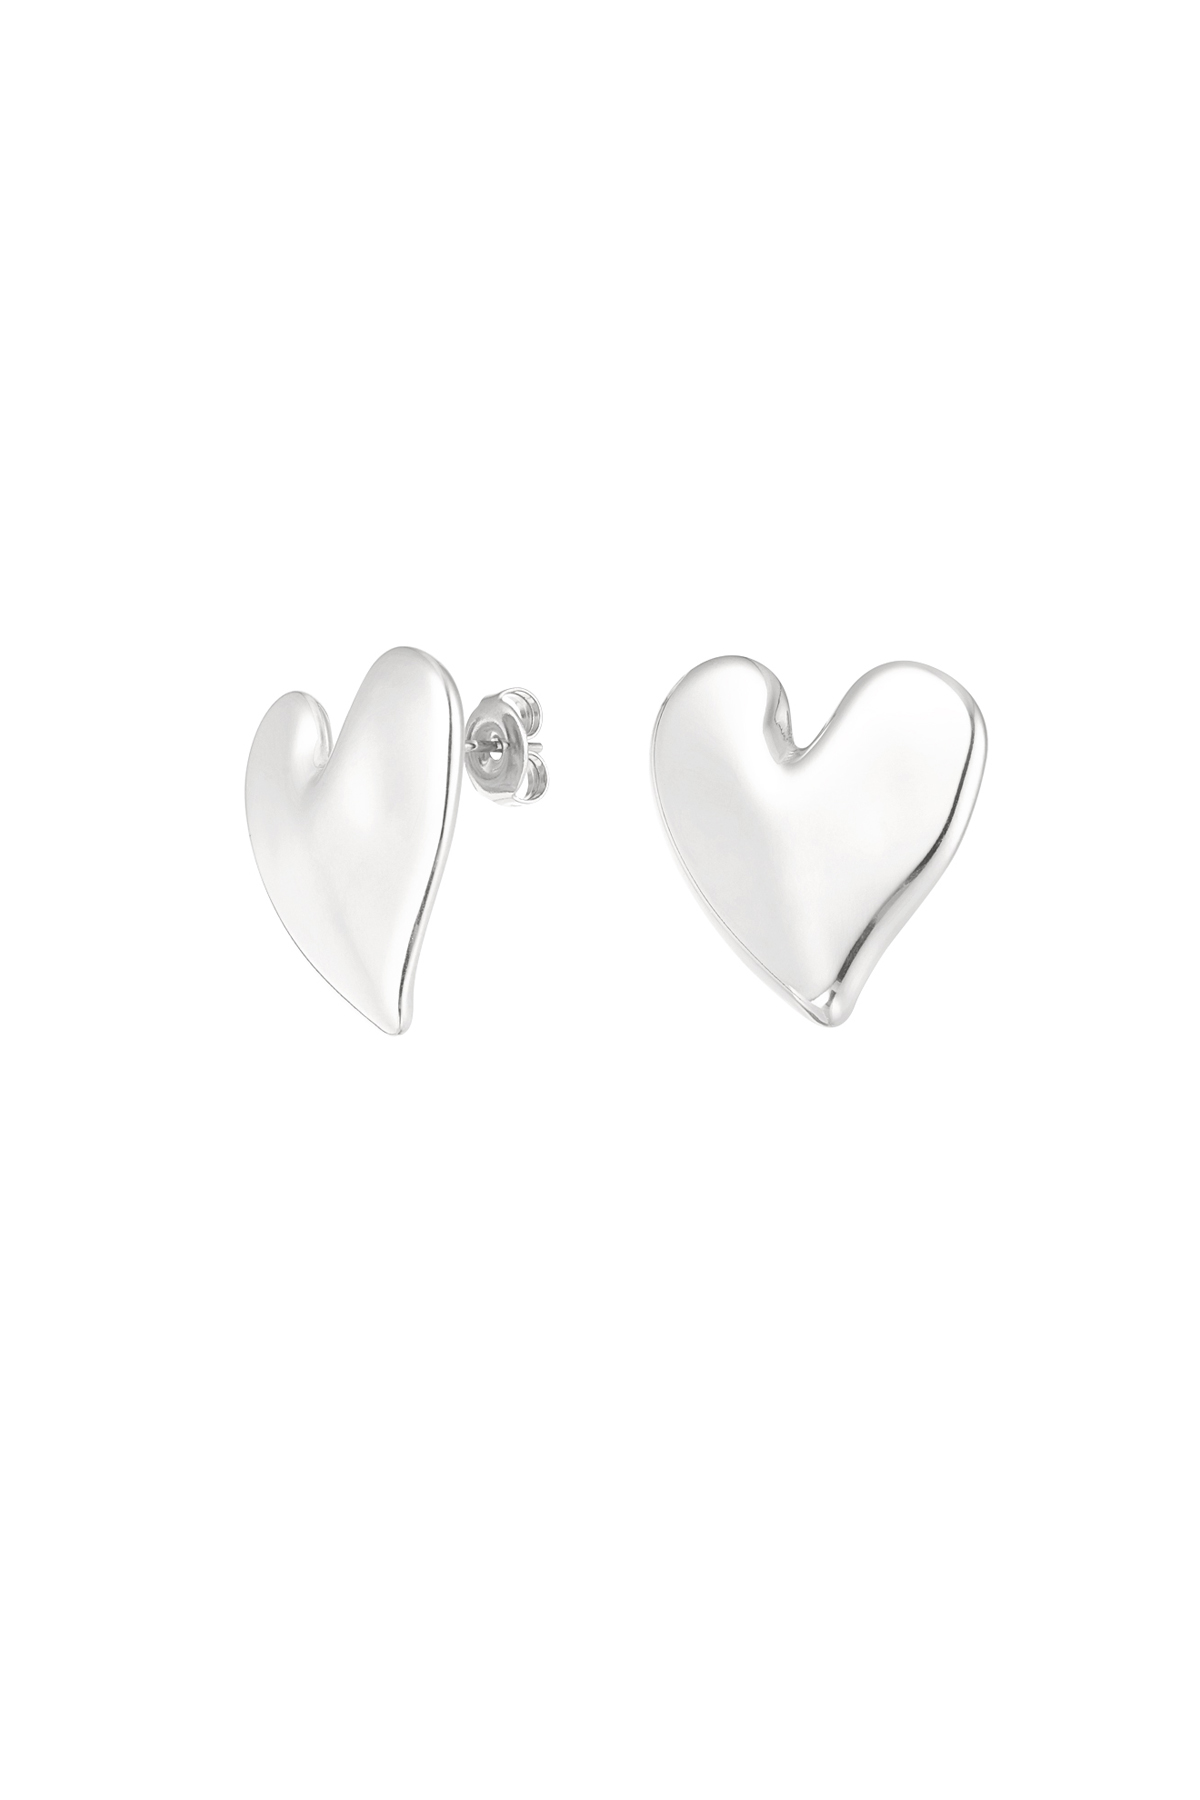 Earrings love first - silver